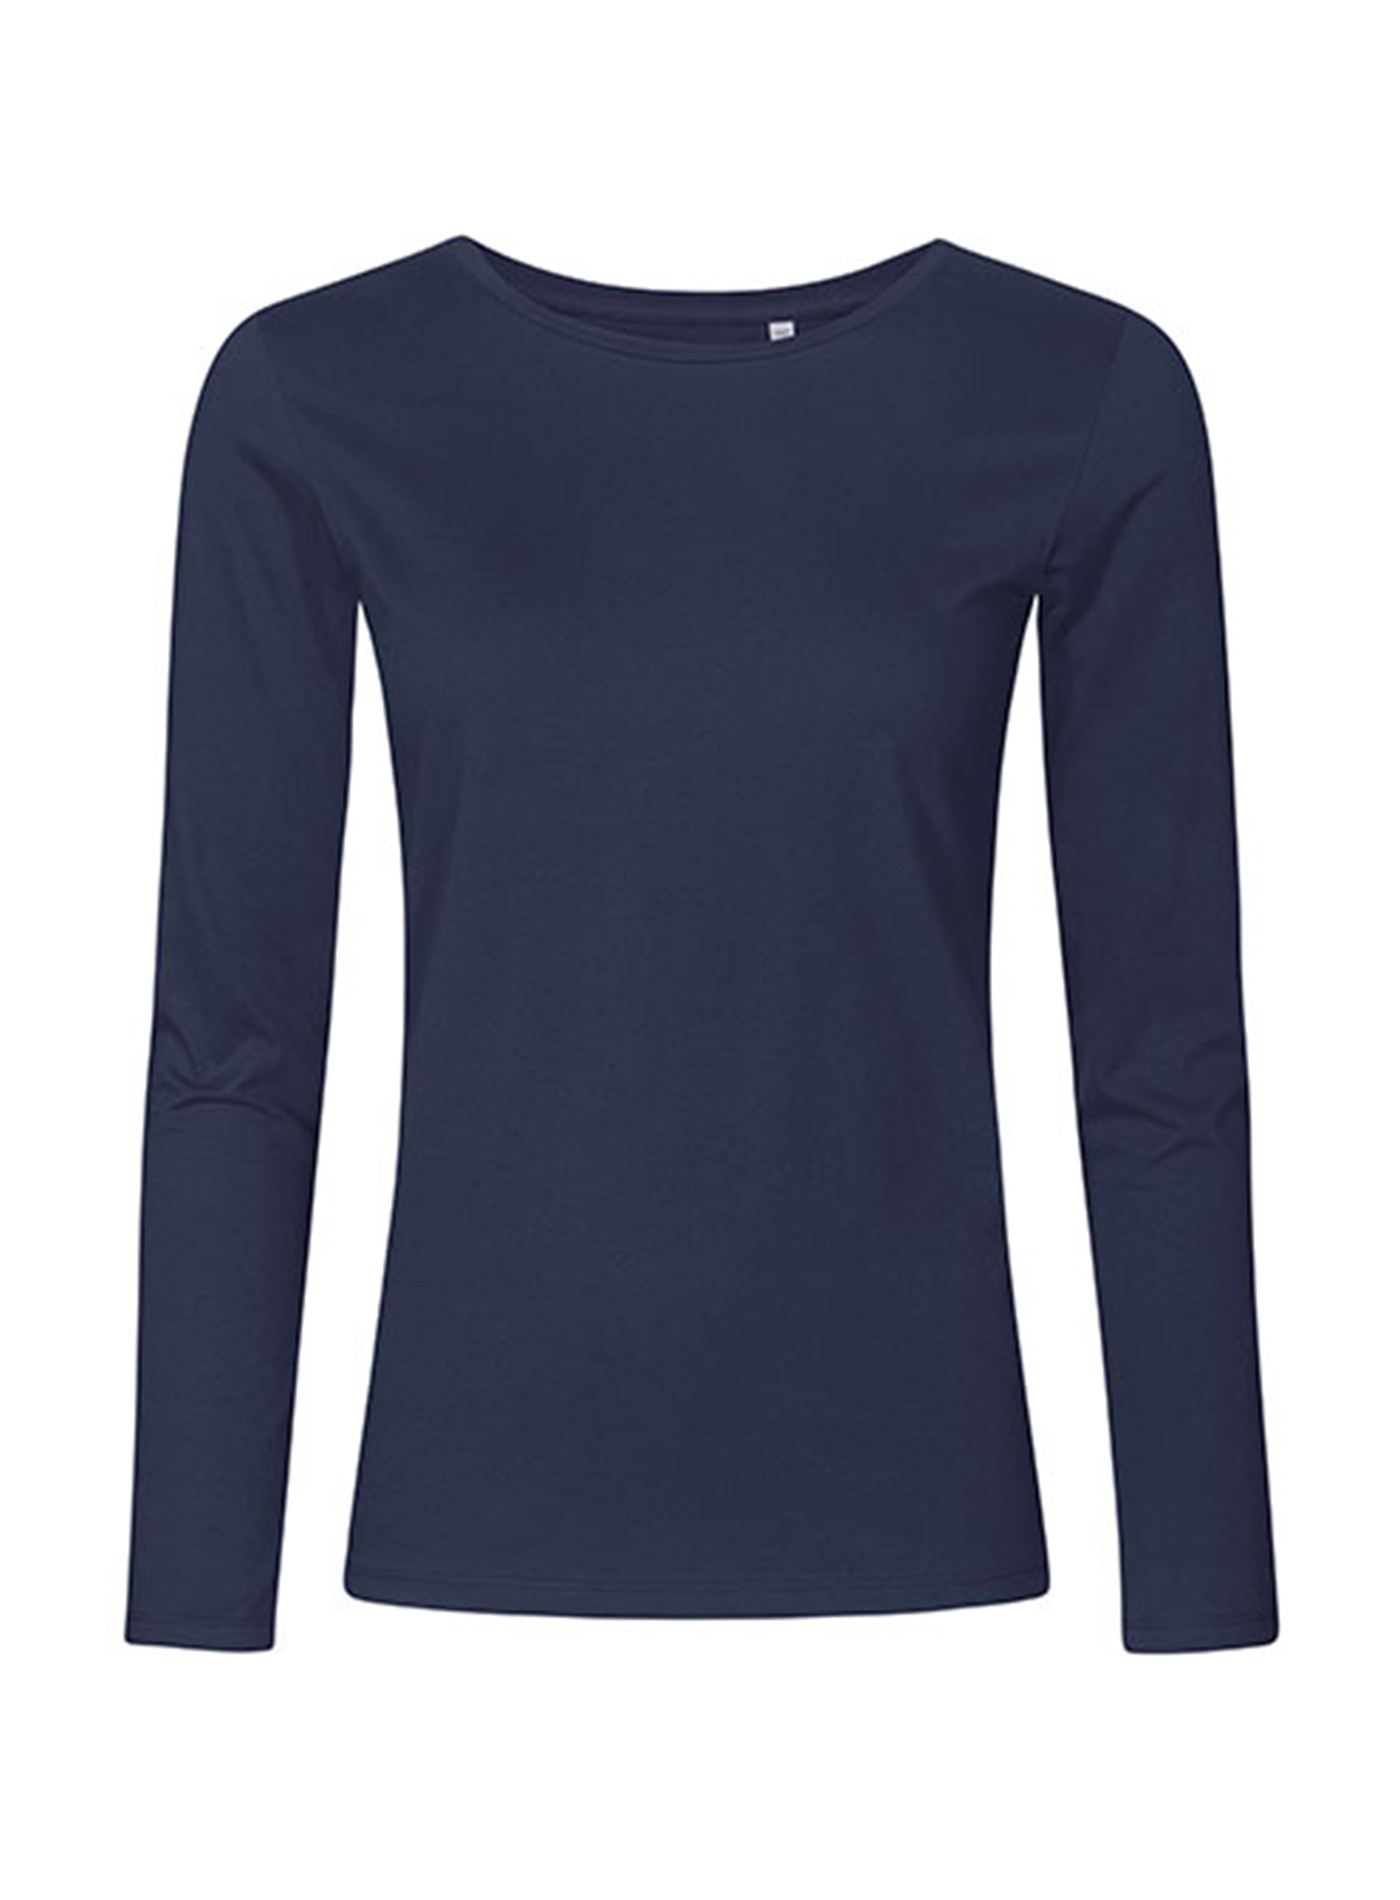 Dámské tričko s dlouhým rukávem s kulatým výstřihem Promodoro - Námořnická modrá L